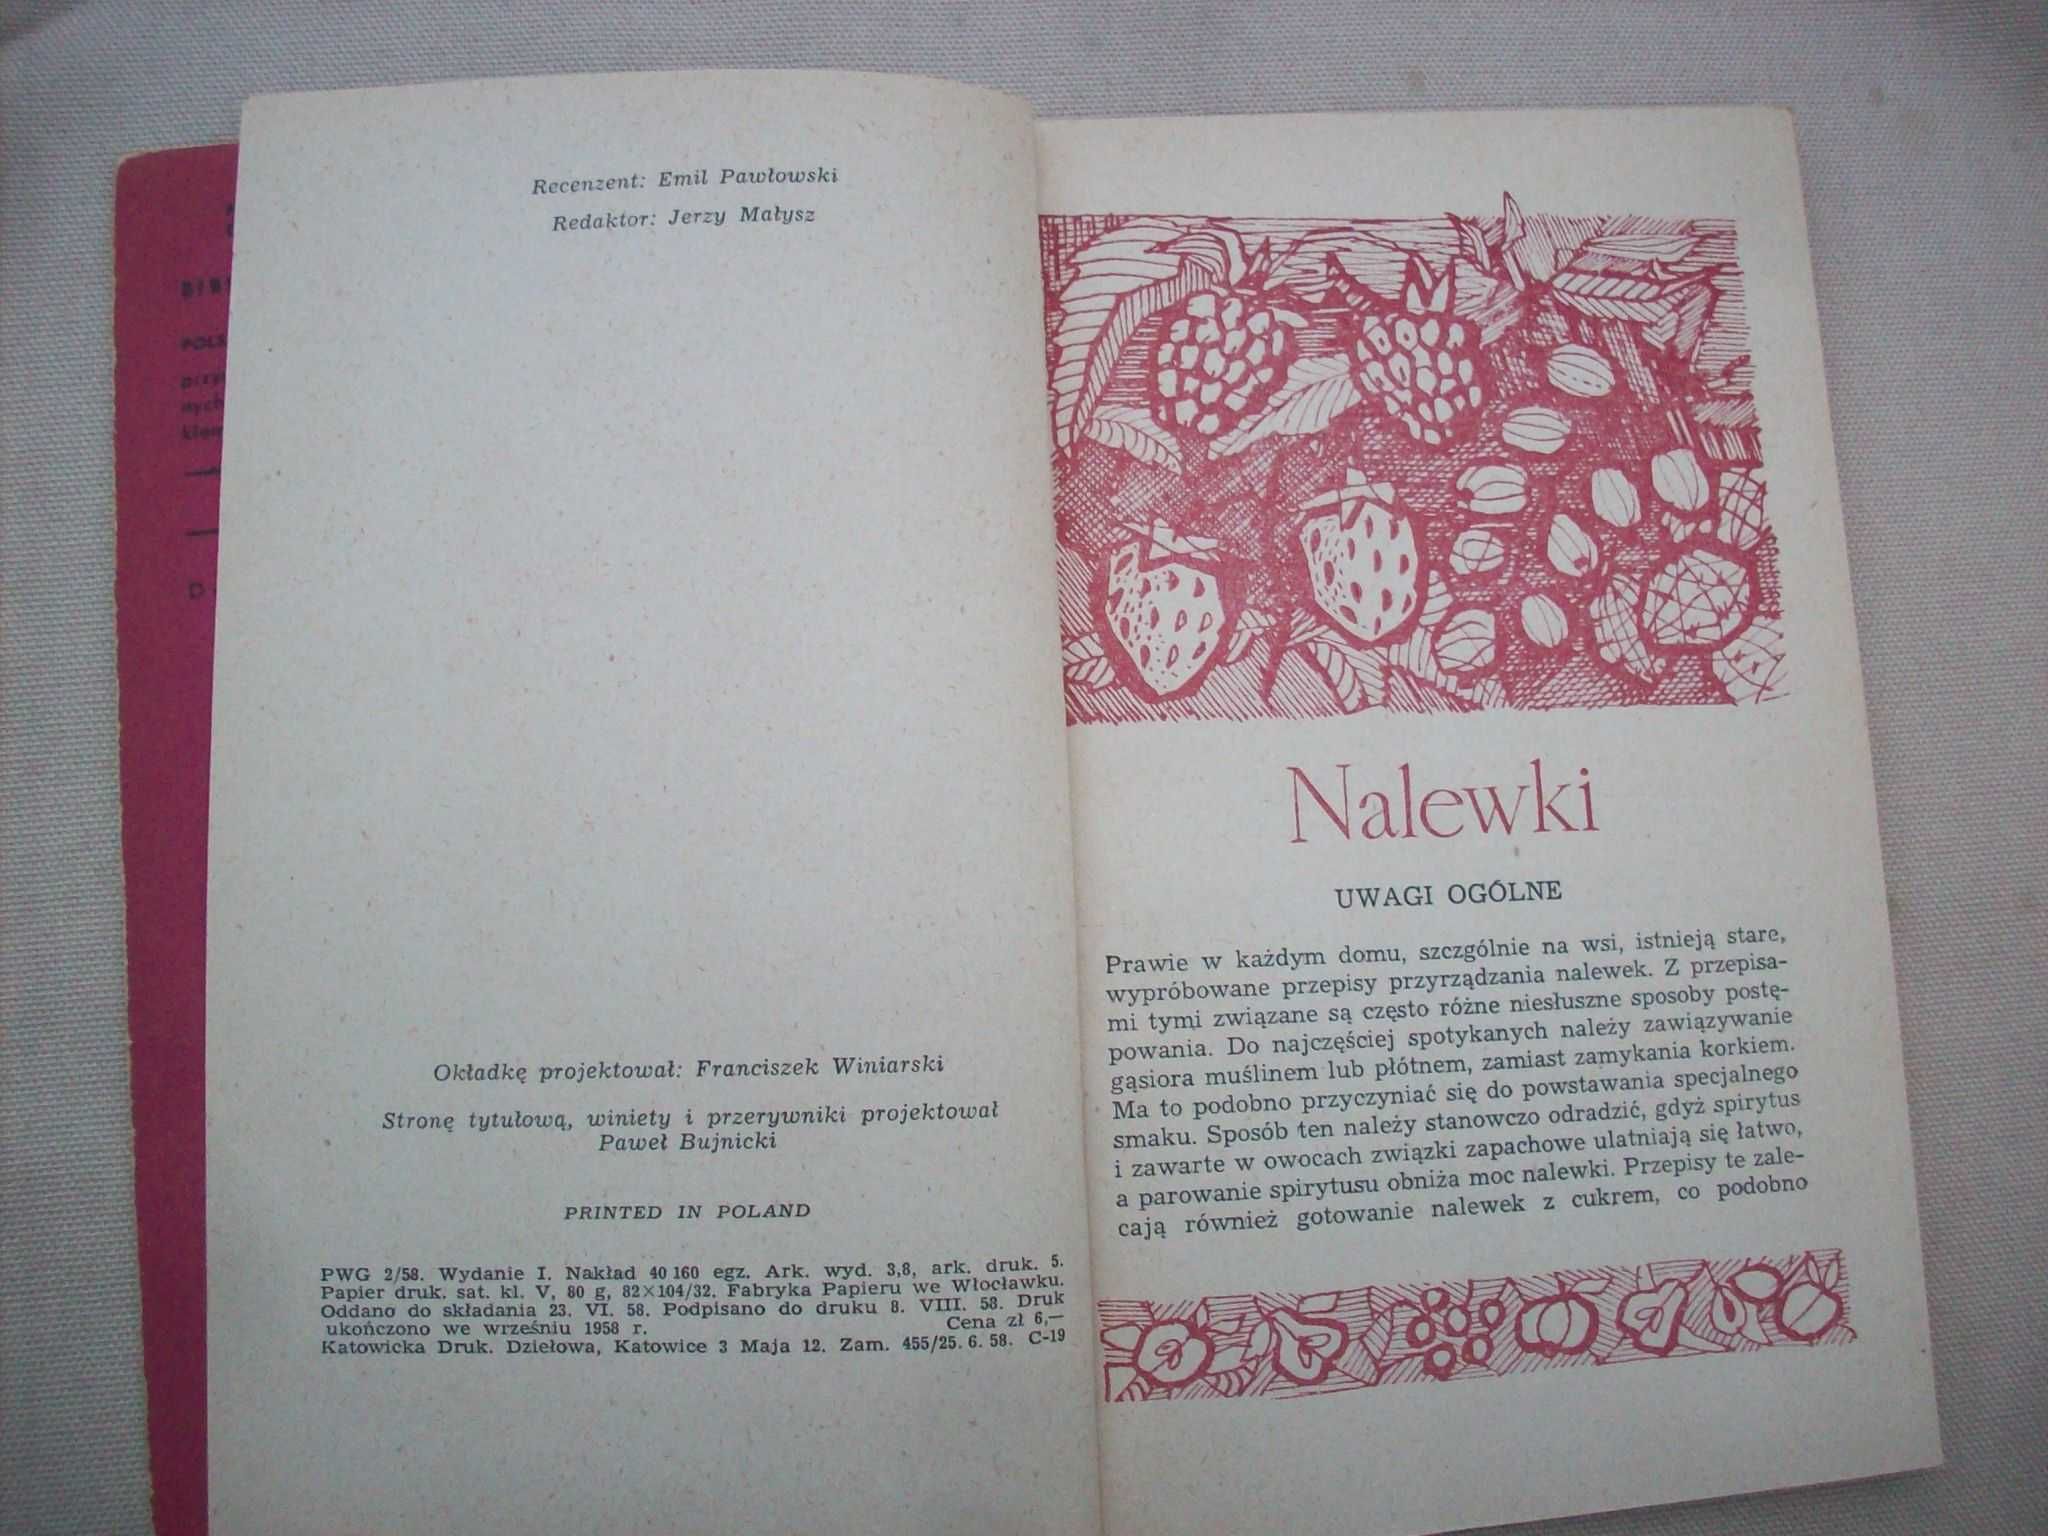 Nalewki, J.Gajkoś, 1957.